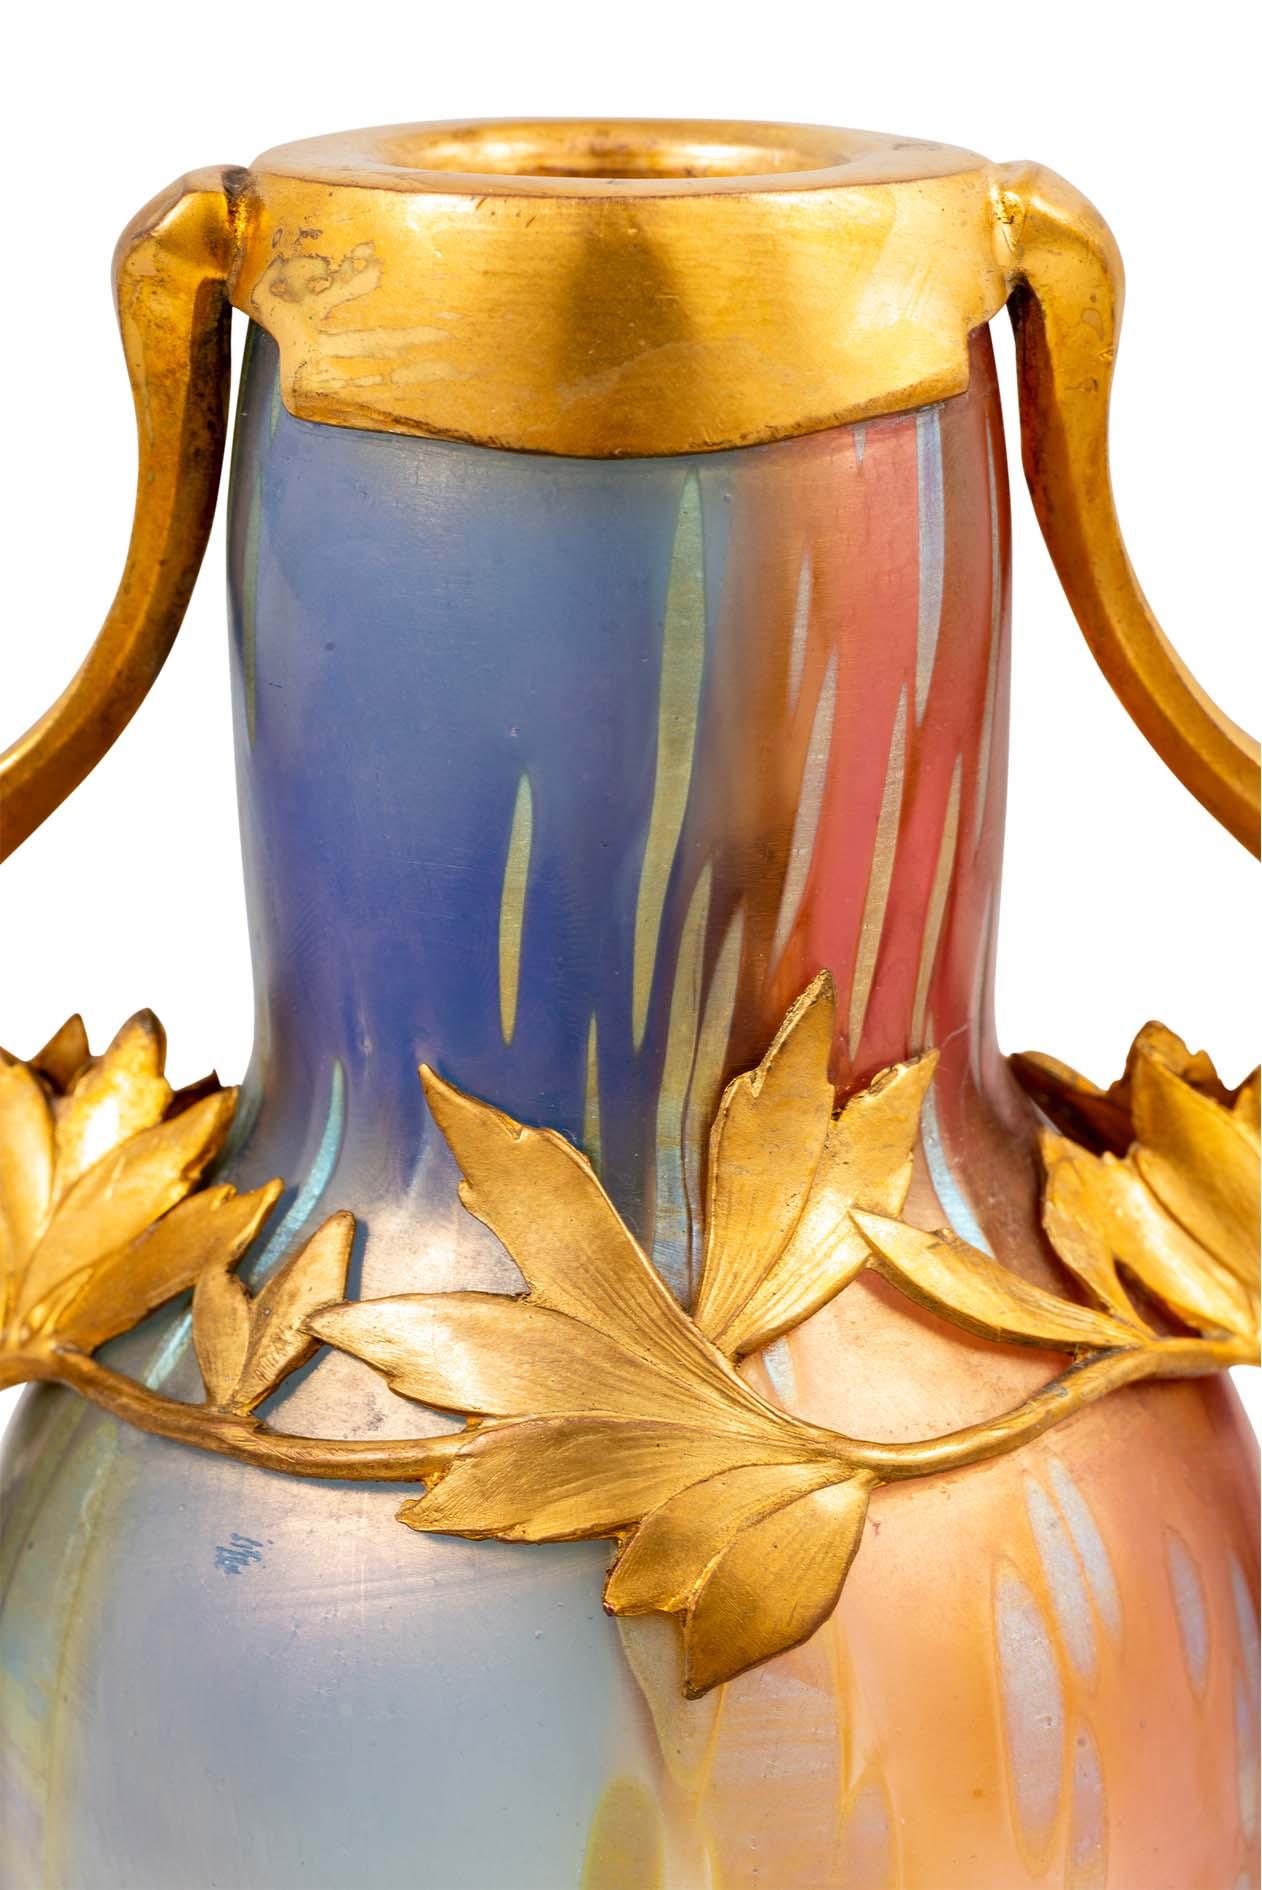 Vase en verre fabriqué par Johann Loetz Witwe Décoration tricolore Montage en métal étamé conçu par Bitter & Gobbers Vers 1900 Jugendstil autrichien Moulé-soufflé réduit et irisé Couleurs arc-en-ciel Bleu Rouge Vert Jaune

Ce groupe de vases avec